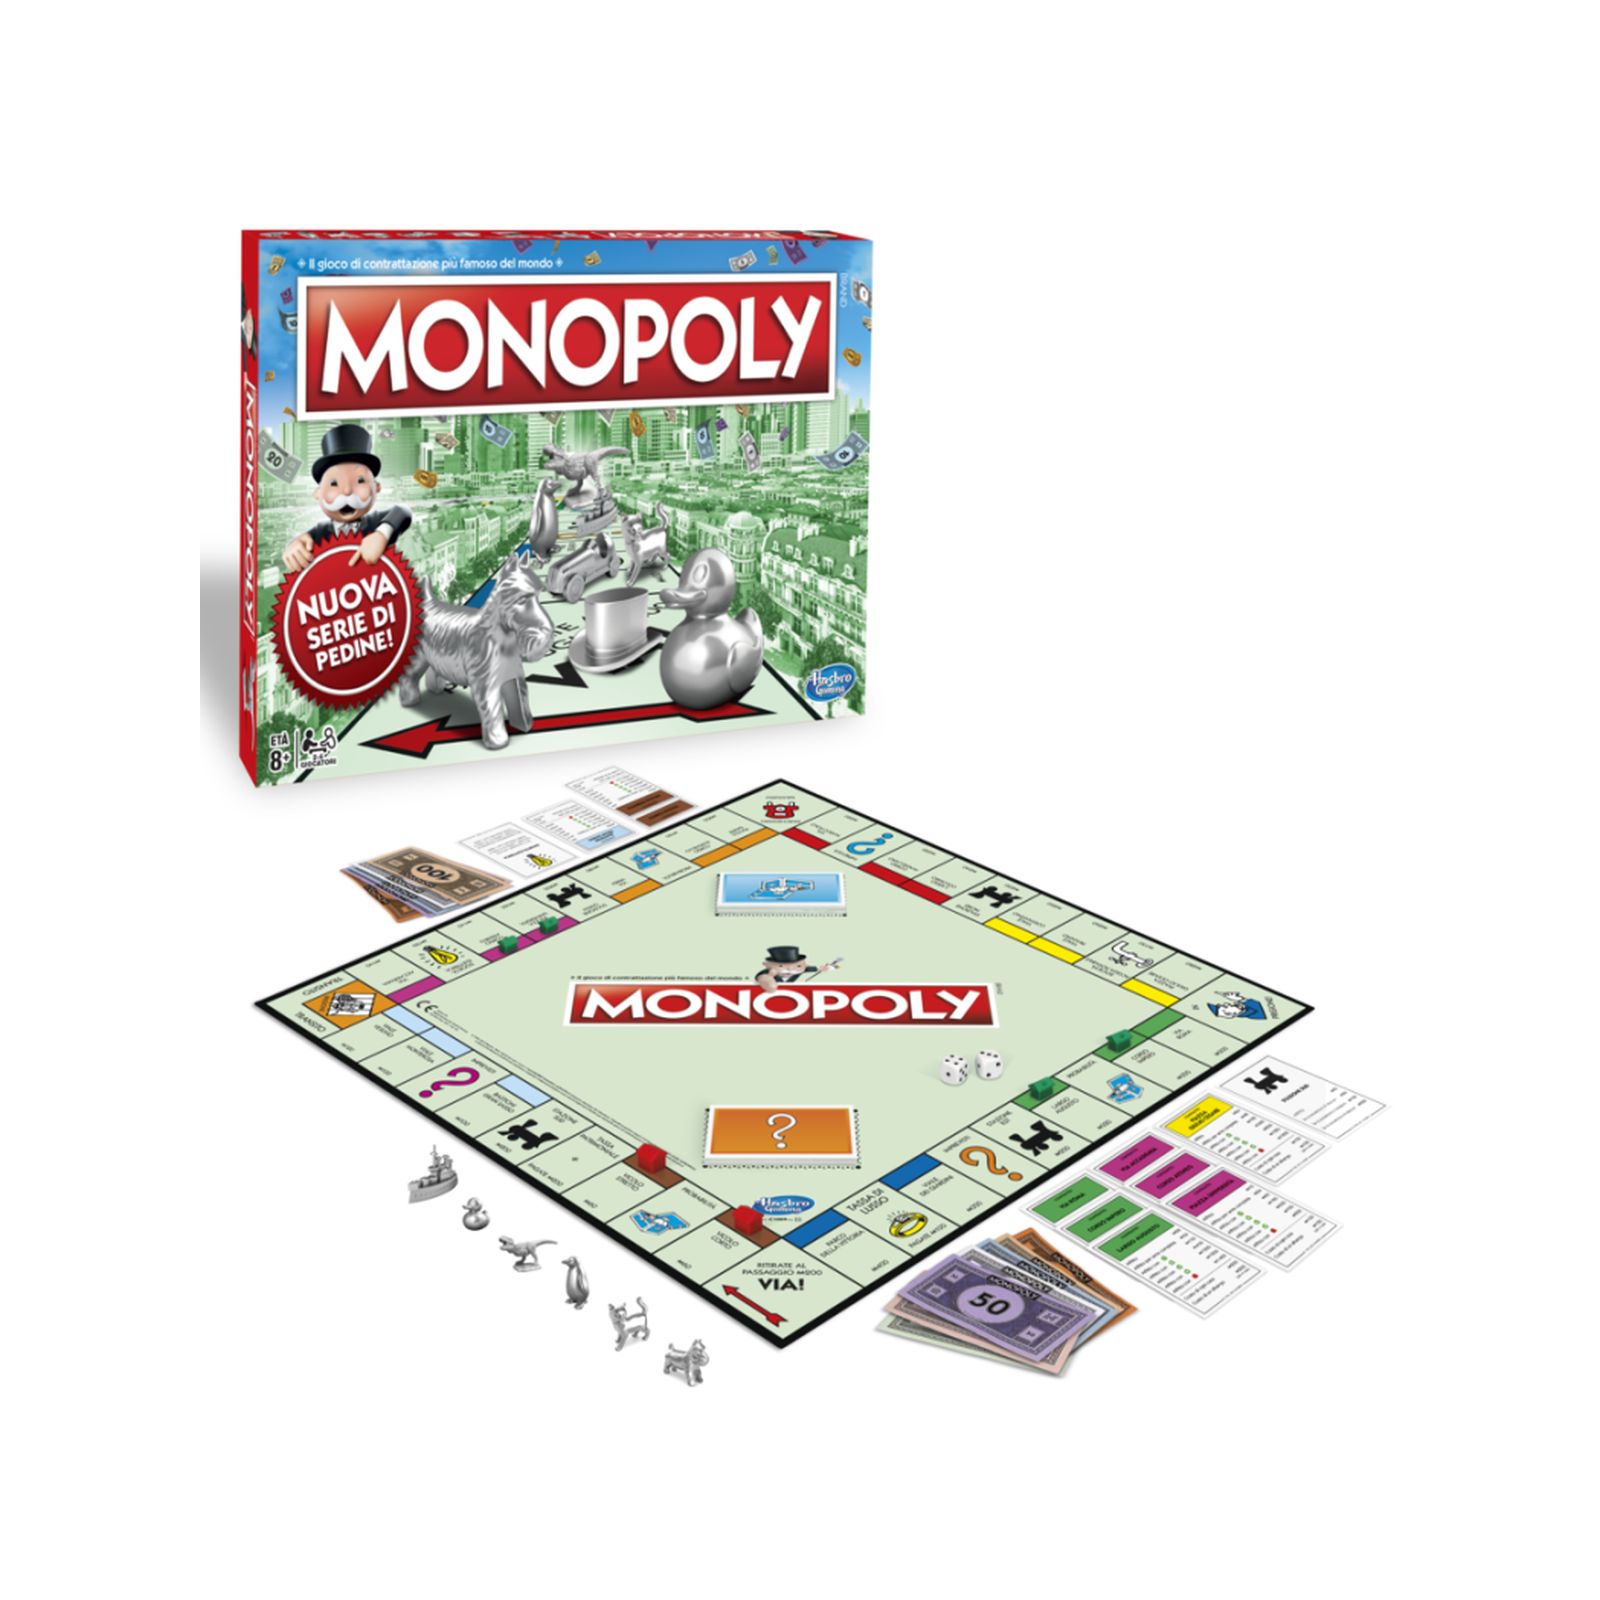 Monopoly classico - MONOPOLY